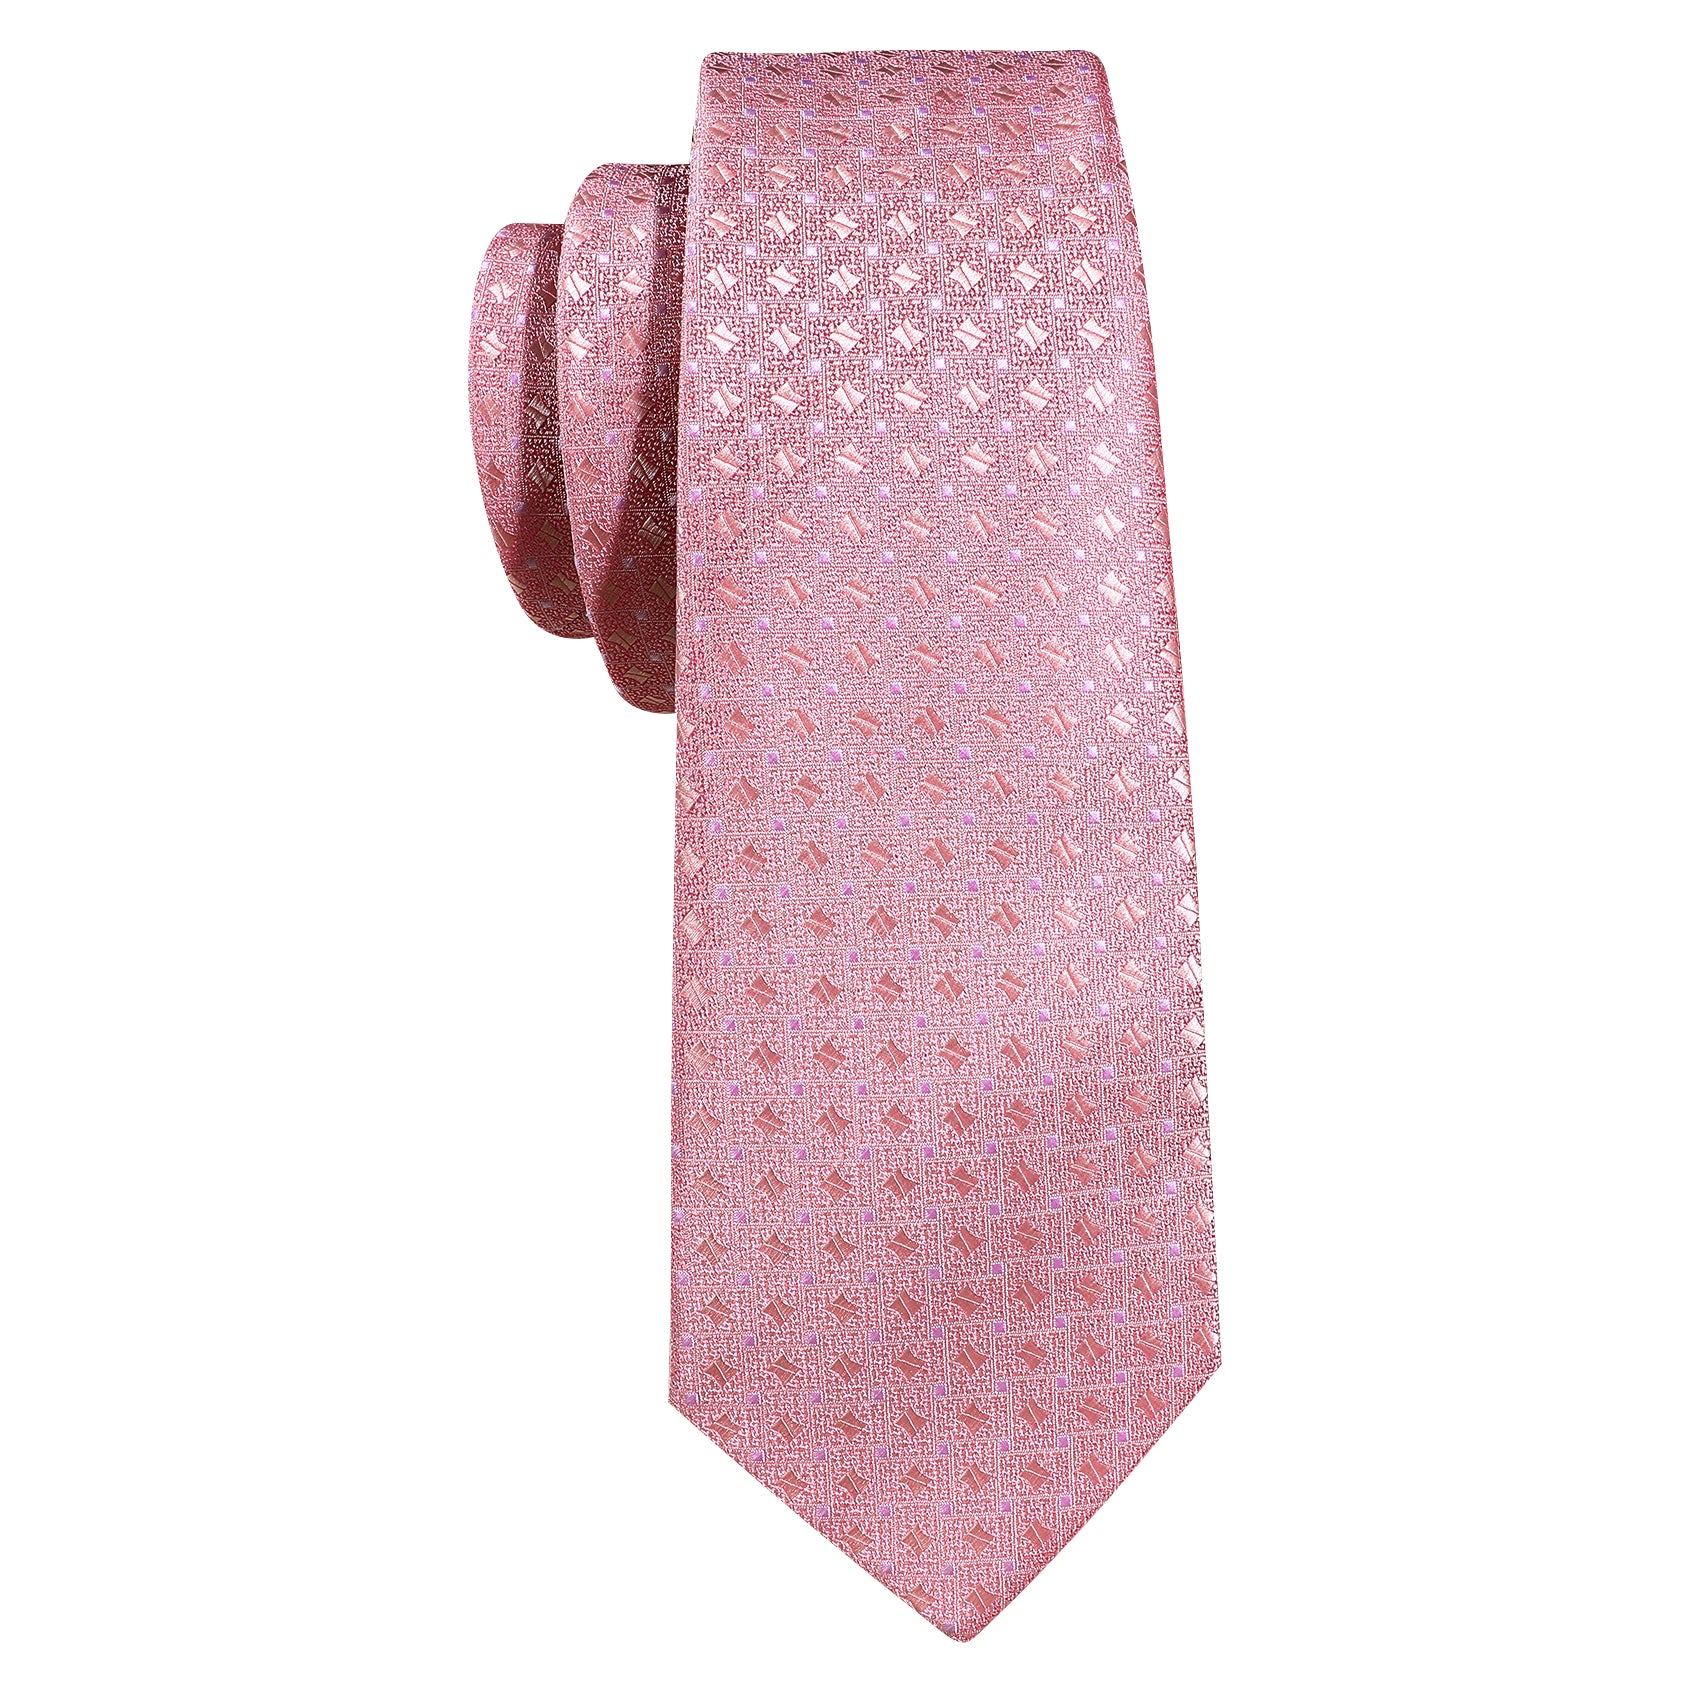 Novetly Pink Floral Silk Tie Hanky Cufflinks Set